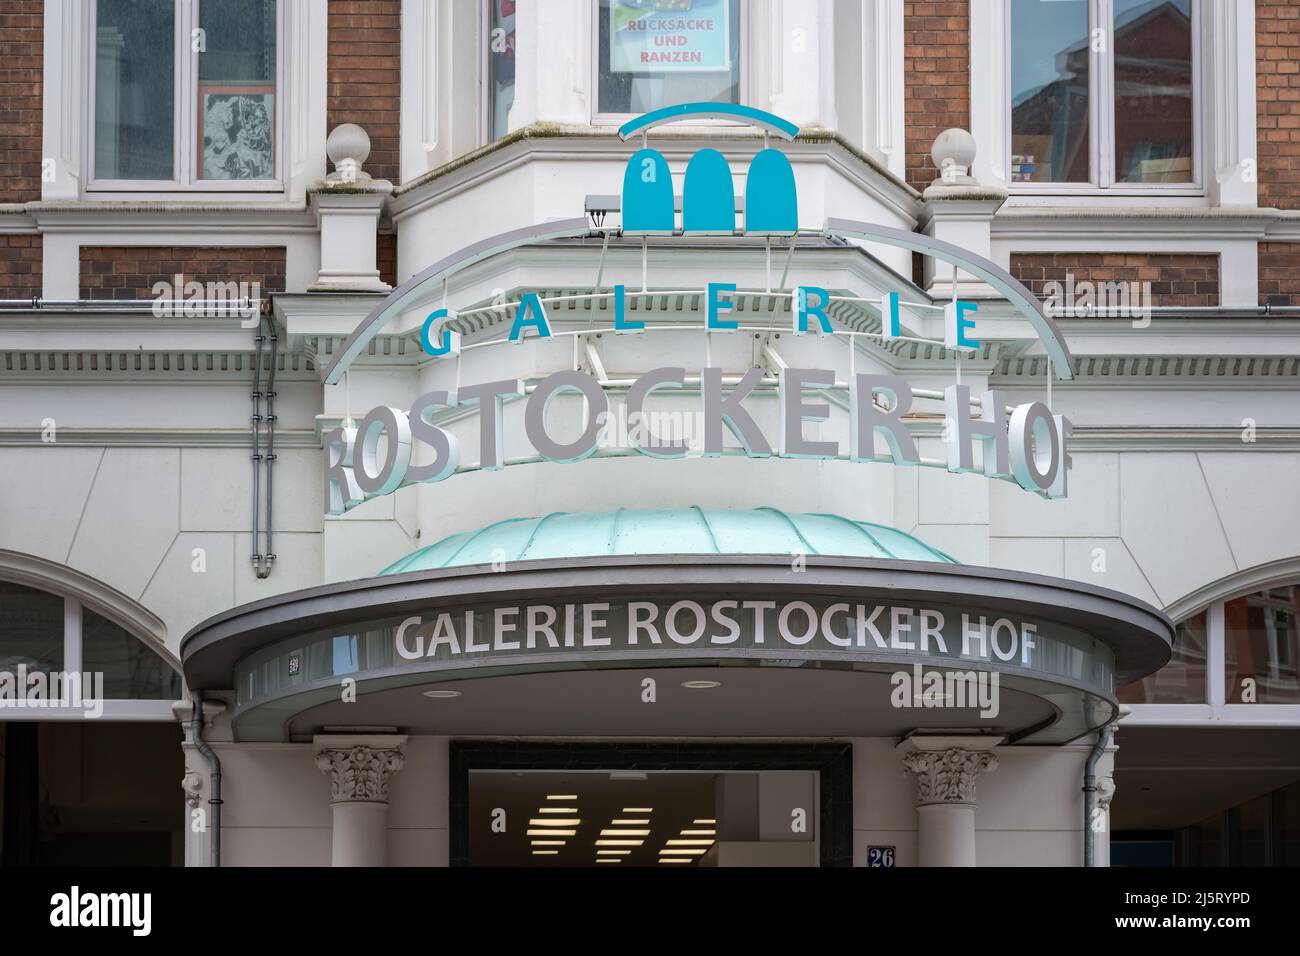 Il logo e la scritta della Galerie Rostocker Hof. Un moderno centro commerciale nel centro della città. La facciata dell'entrata frontale e' storica. Foto Stock